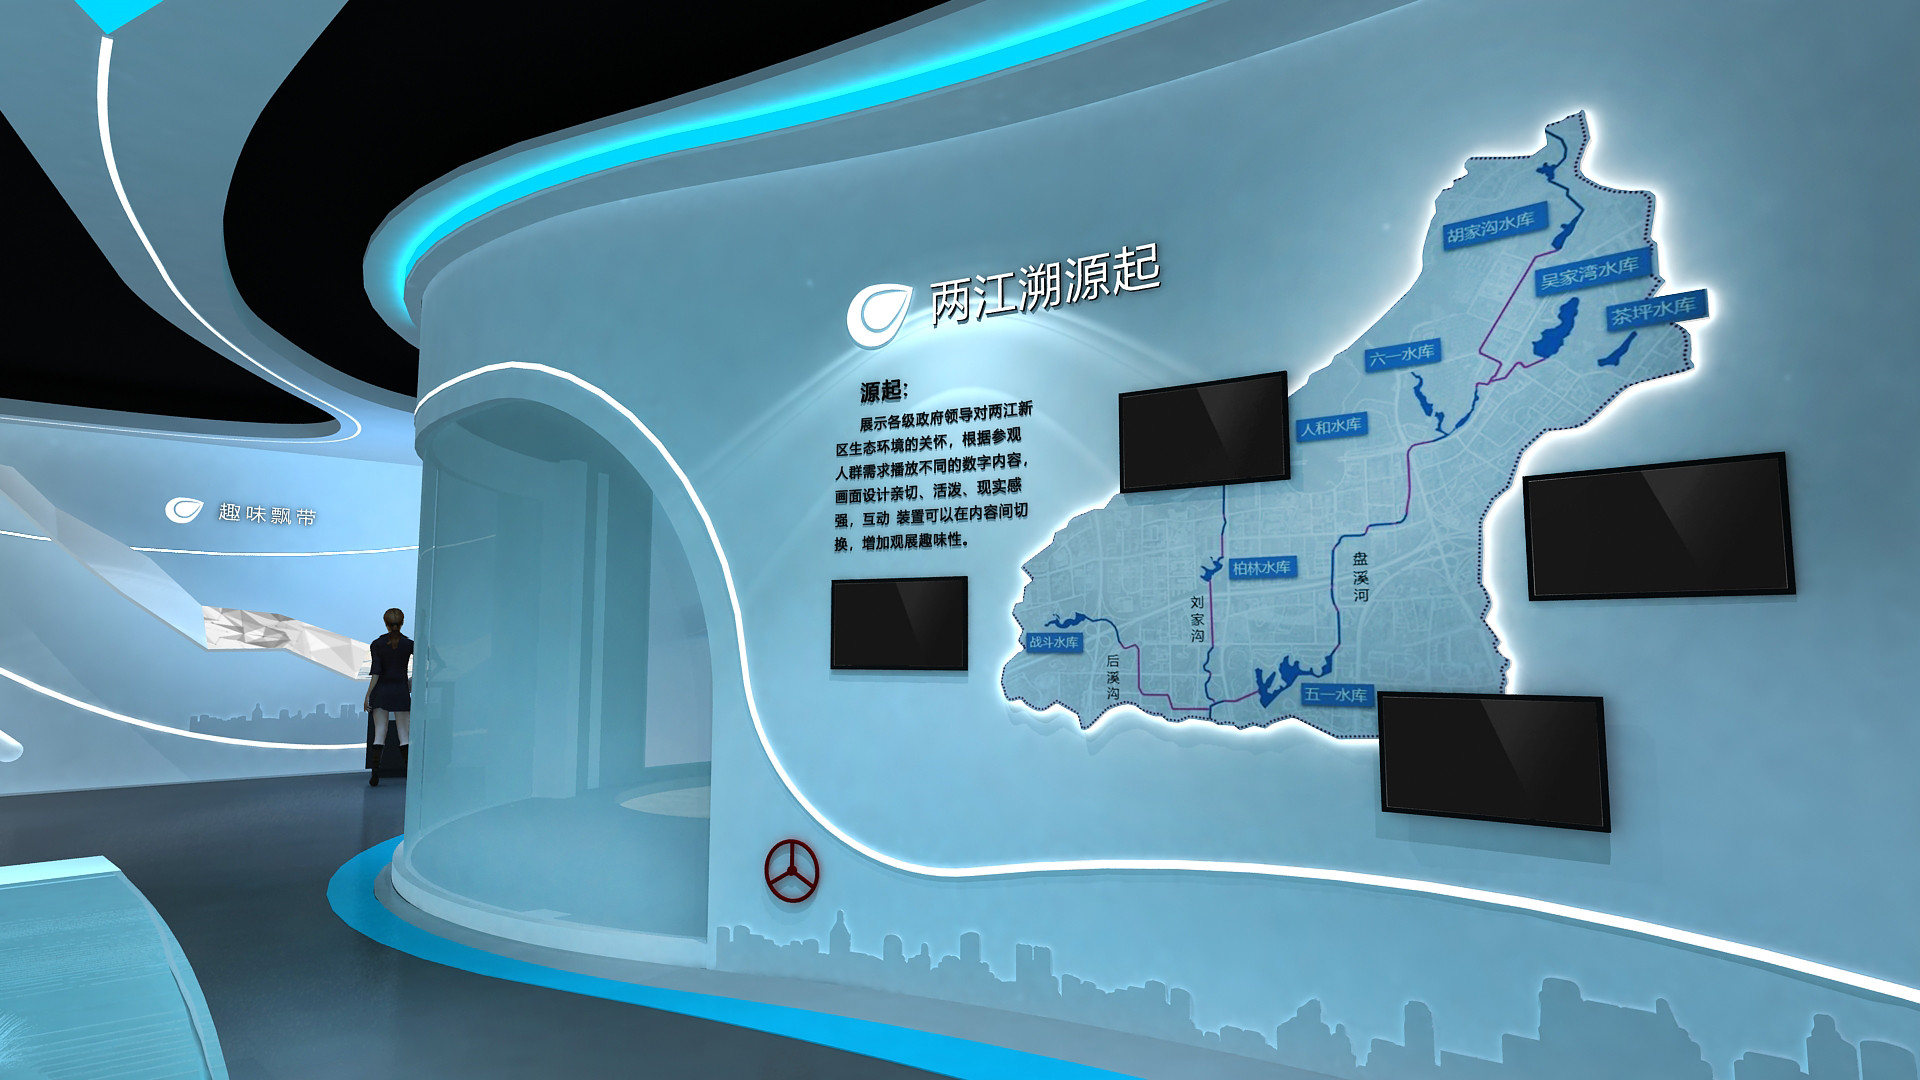 江苏智慧能源体验厅效果图 来电咨询 深圳市概念展示策划供应;